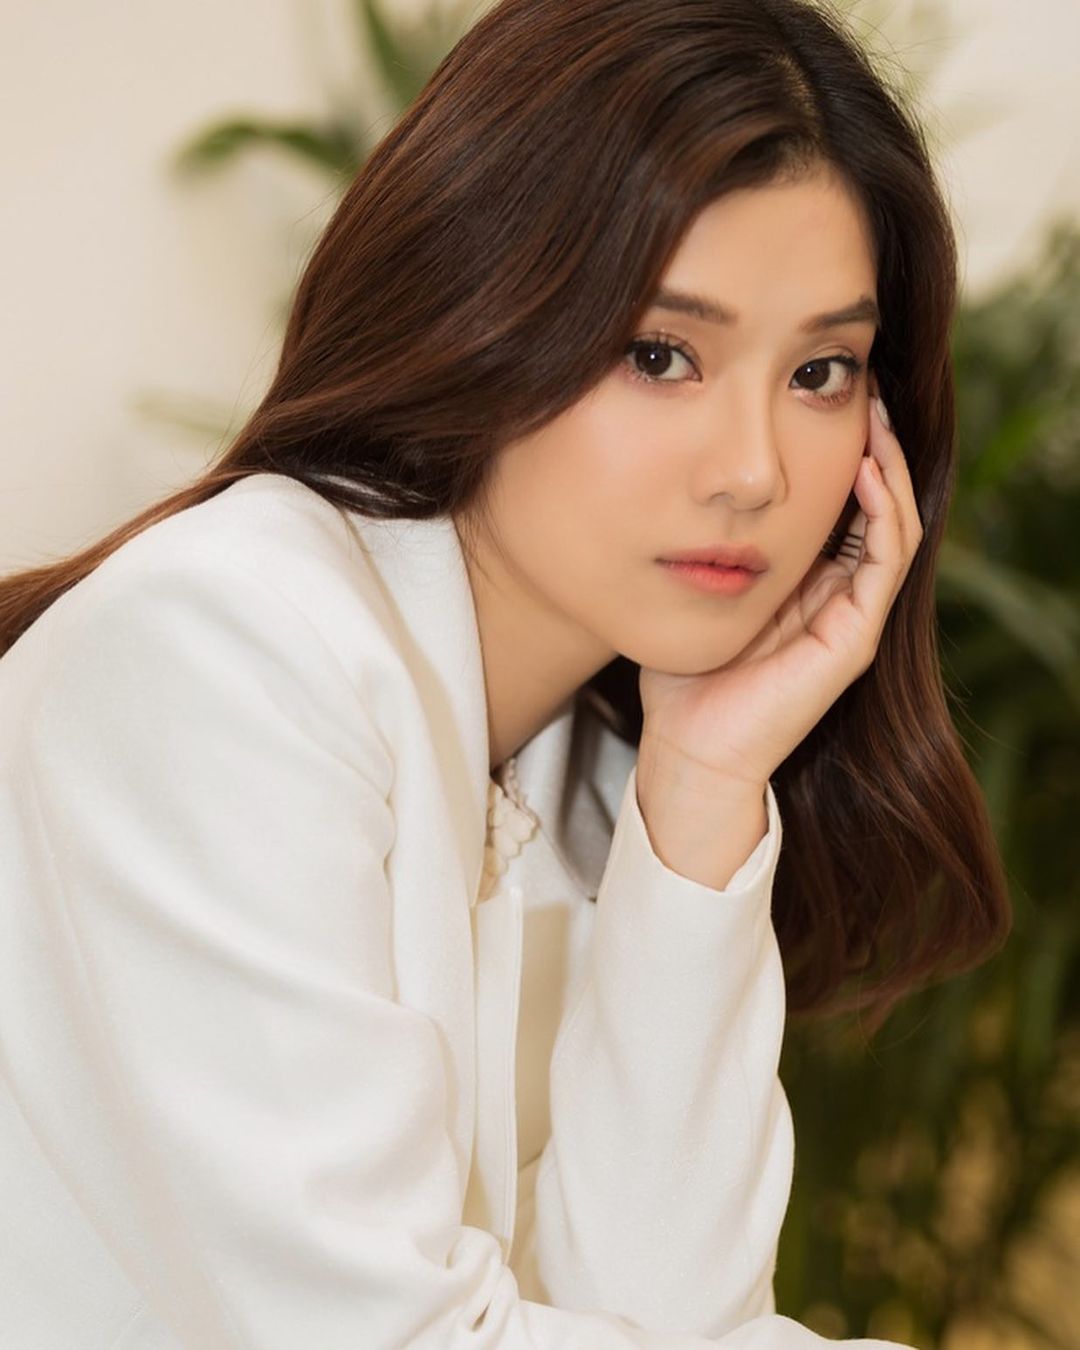 Hoàng Yến Chibi tung ảnh diện nội y giống hệt Jennie (BLACKPINK) - Ảnh 9